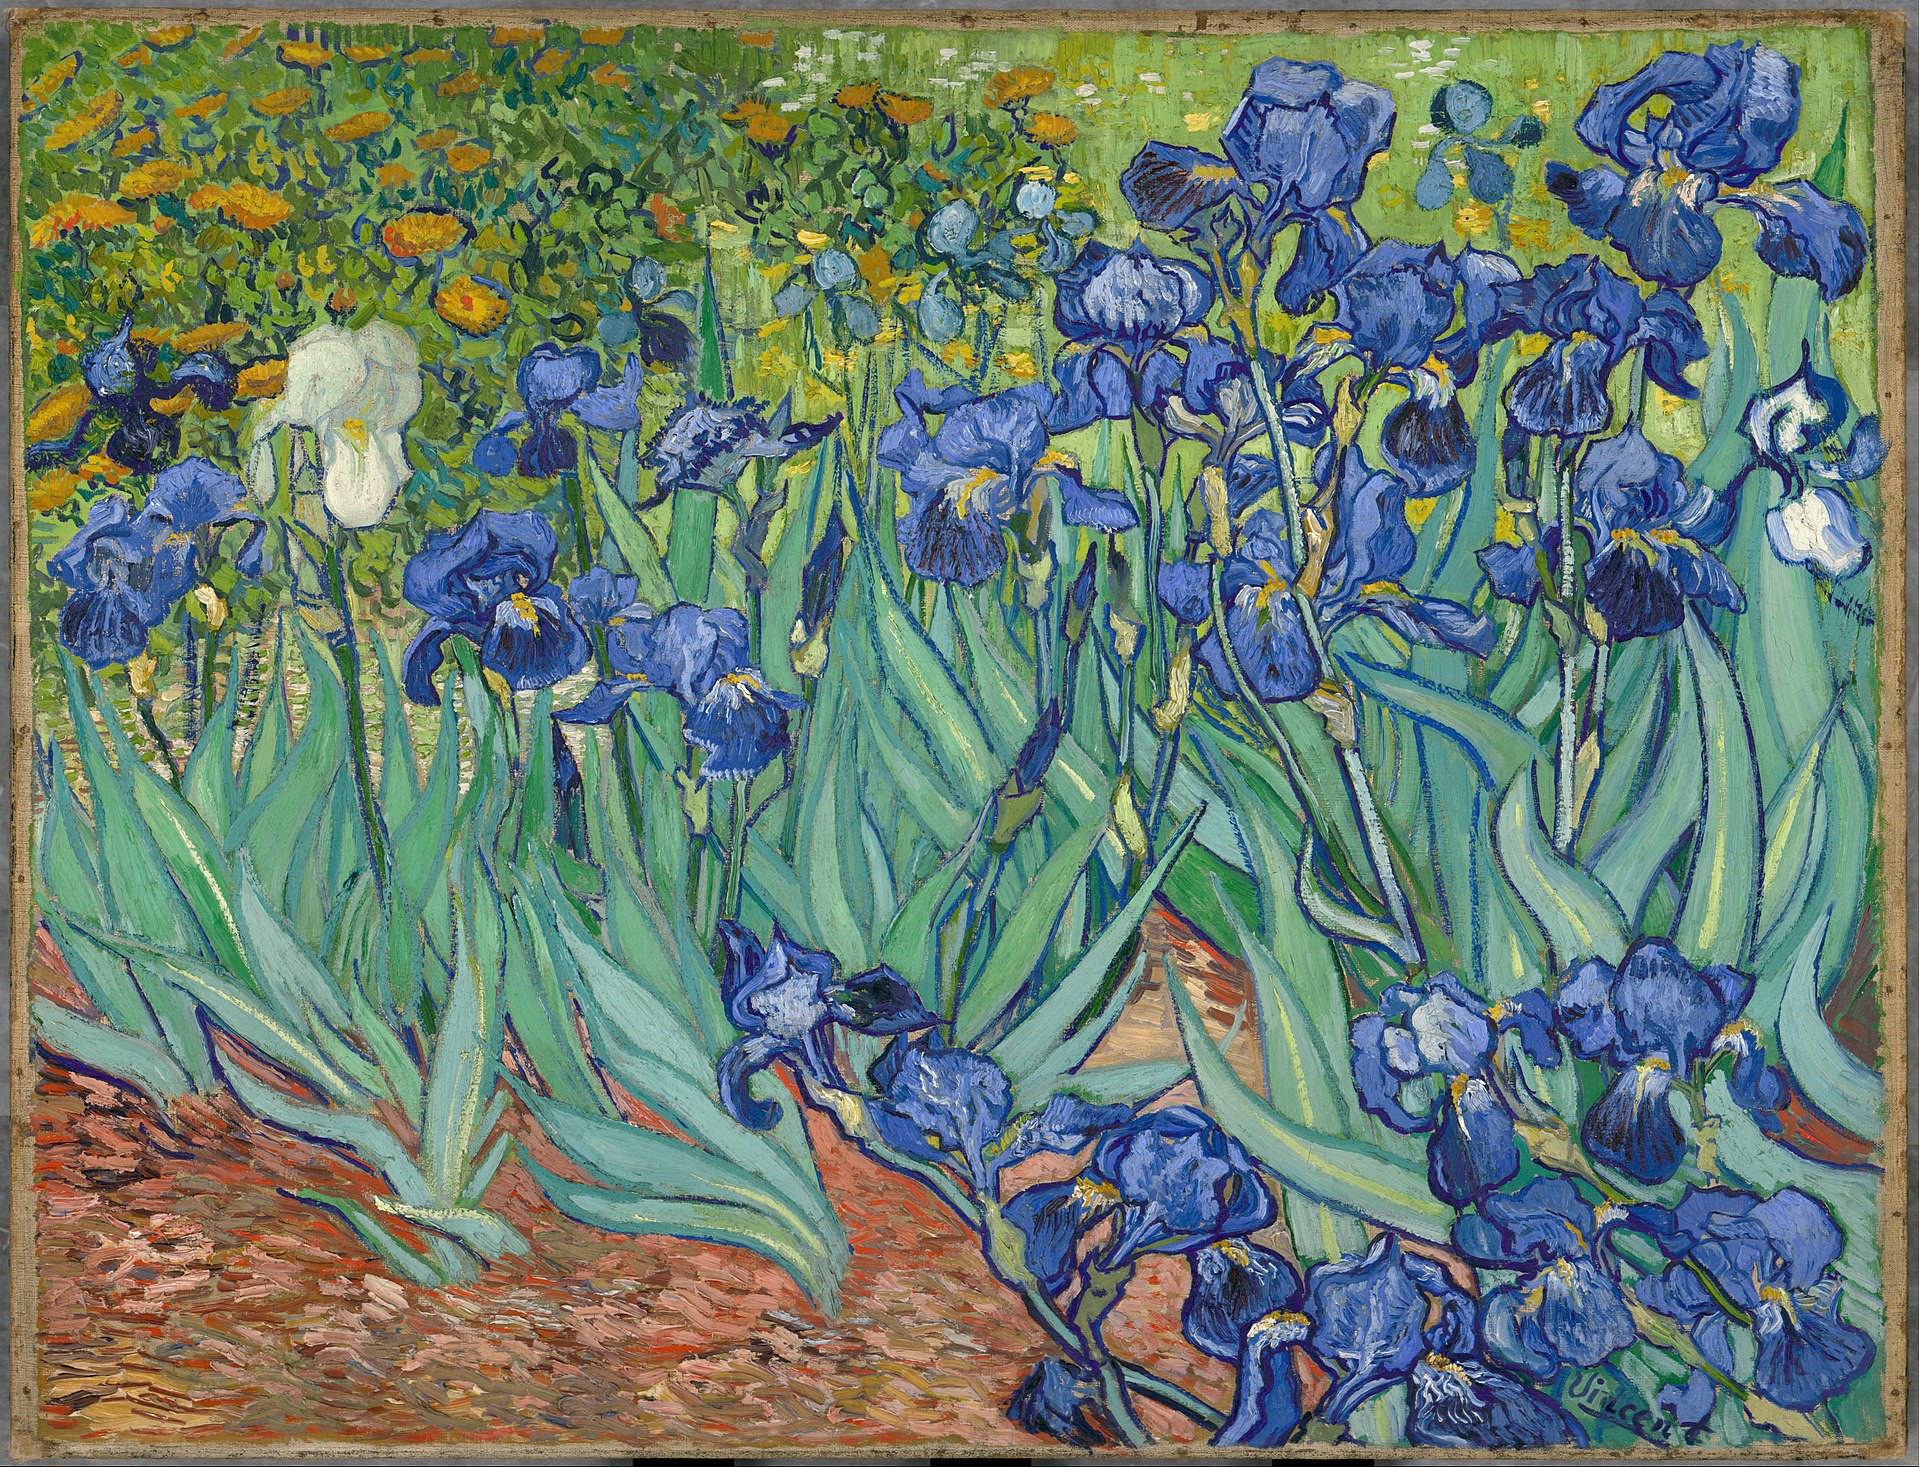 Với tài năng và cảm xúc trong mỗi nét vẽ, tác phẩm của Van Gogh là một bước nhảy vọt trong lịch sử nghệ thuật. Hãy xem hình ảnh để chiêm ngưỡng một số tác phẩm nổi tiếng của ông.